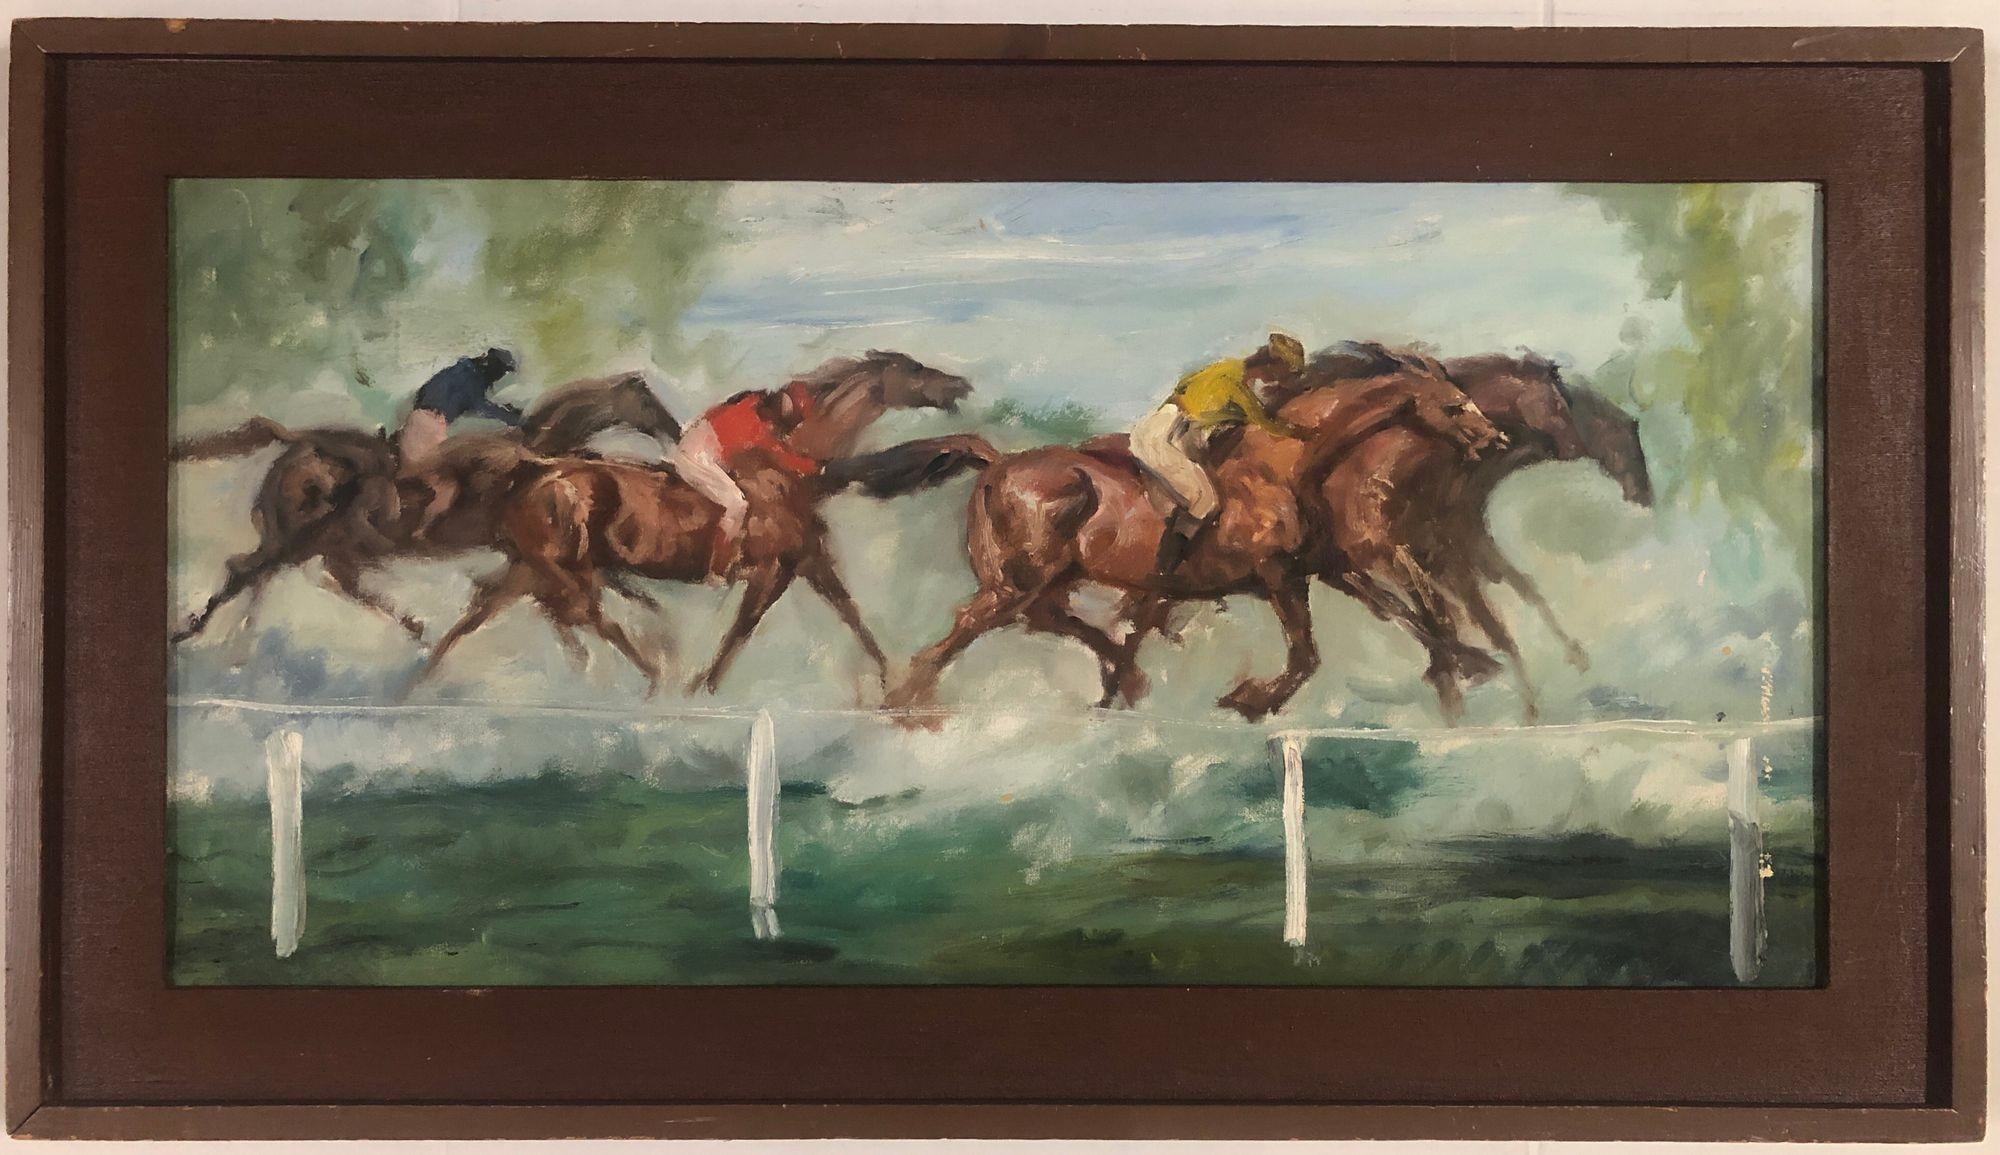 Tableau d'art expressionniste d'après-guerre Peinture à l'huile d'une scène de course de chevaux représentant plusieurs jockeys dans une course vers la ligne d'arrivée, avec un cadre carré en bois dur.

Vers 1960, non signé